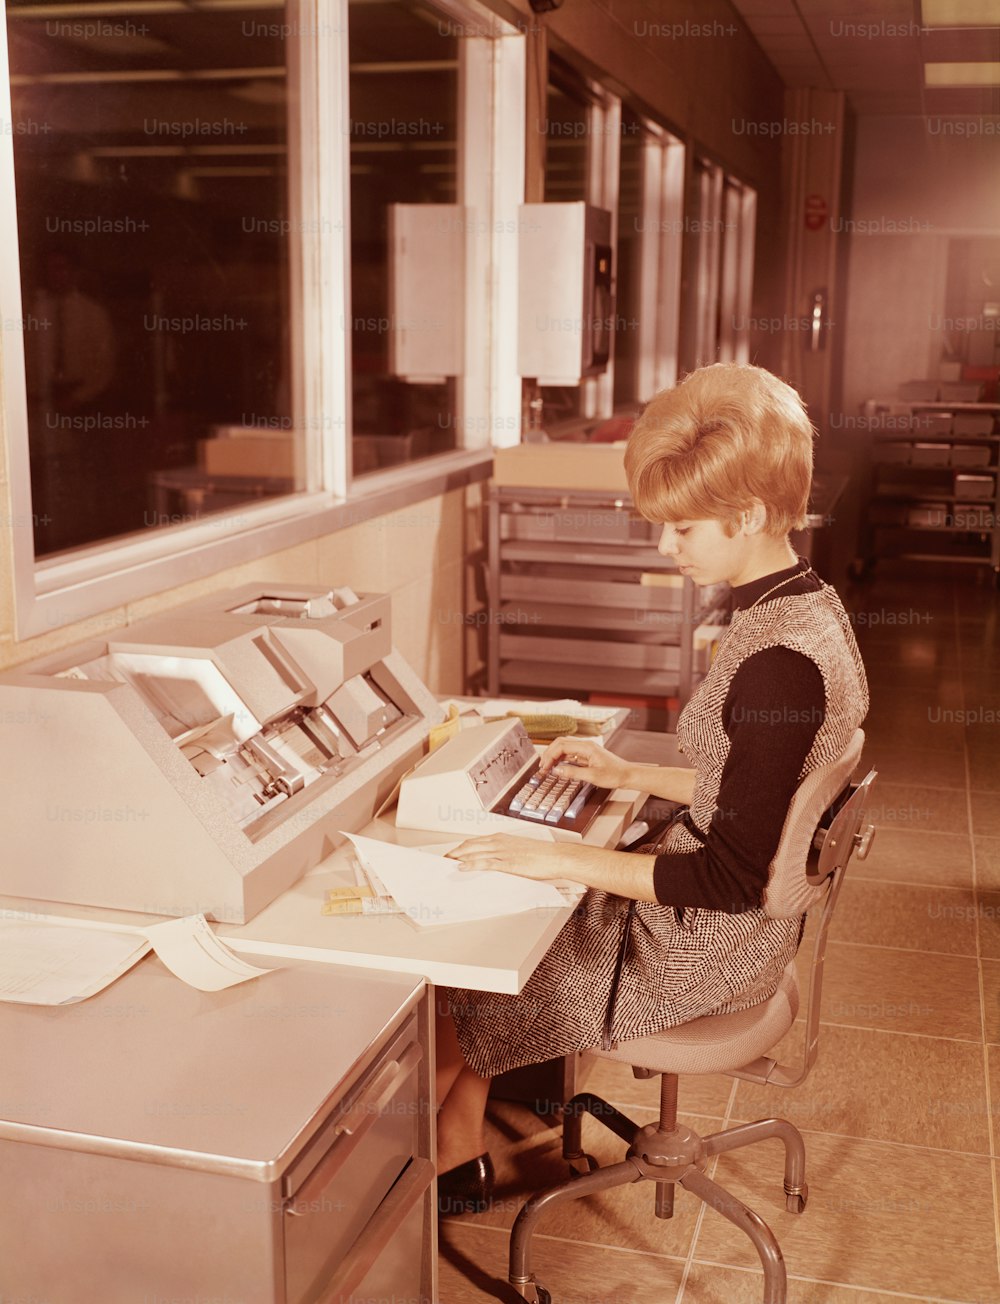 STATI UNITI - 1970 circa: Donna seduta alla tastiera.